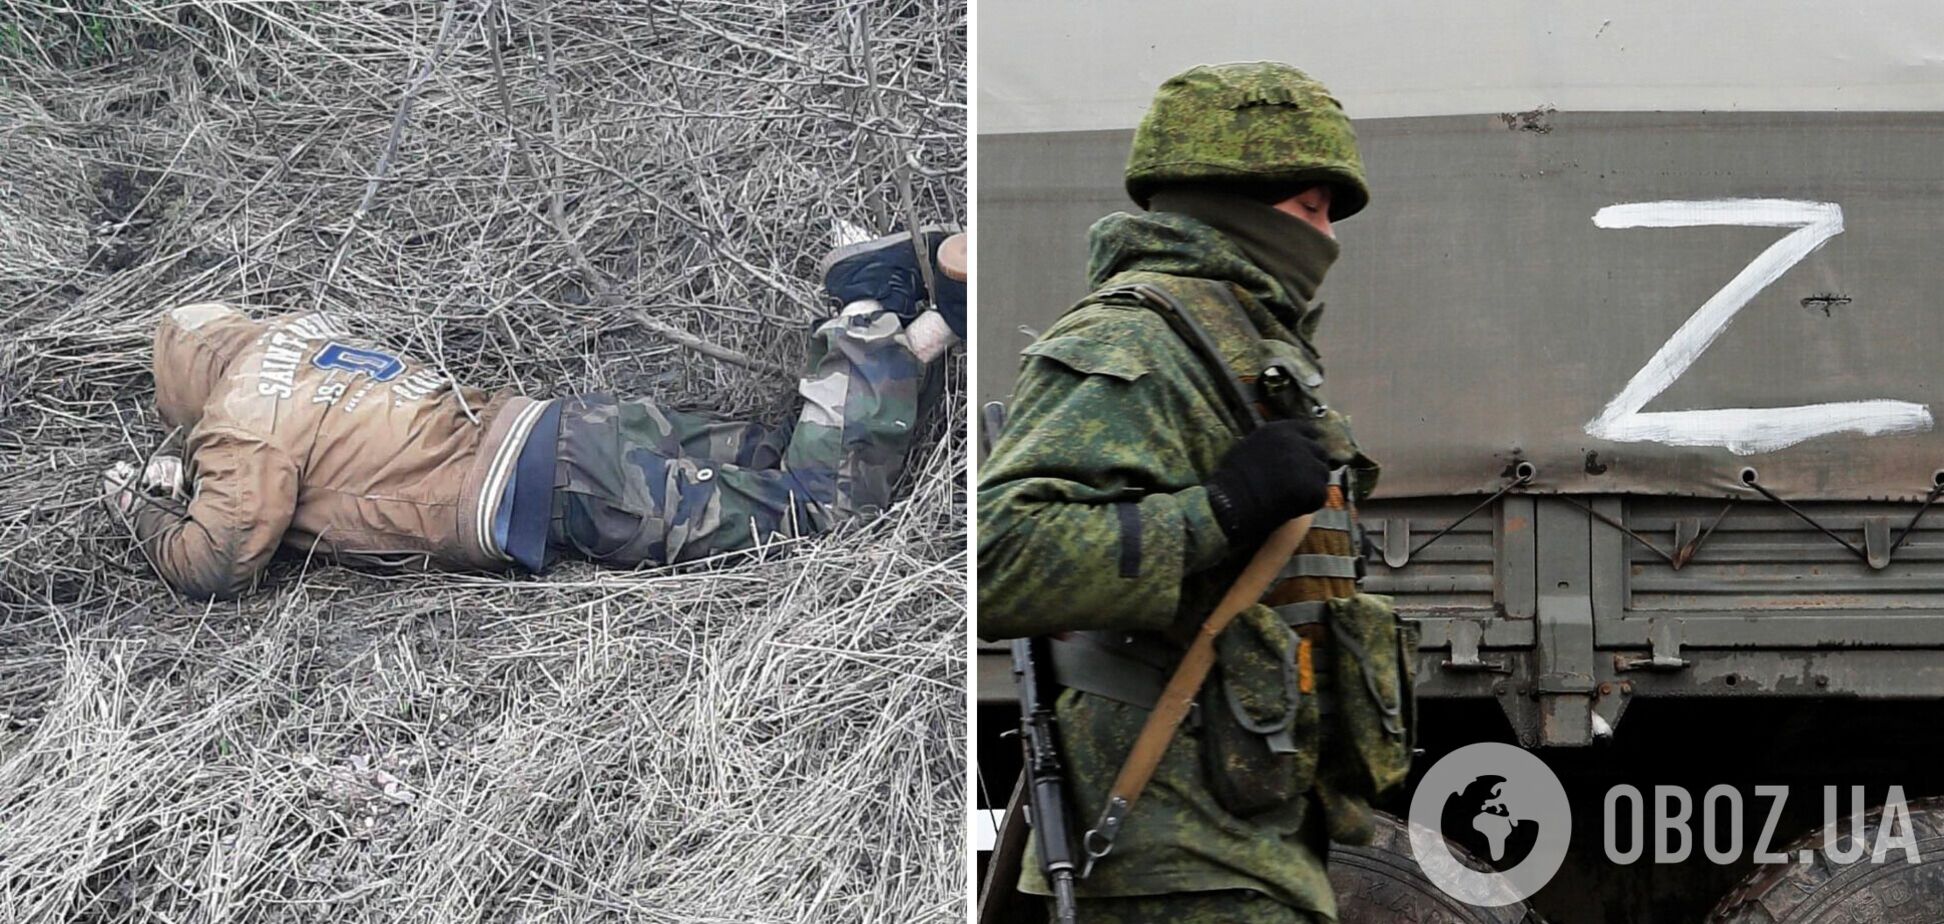 Российские оккупанты связали, пытали, а затем застрелили жителя Сумщины – Офис Генпрокурора